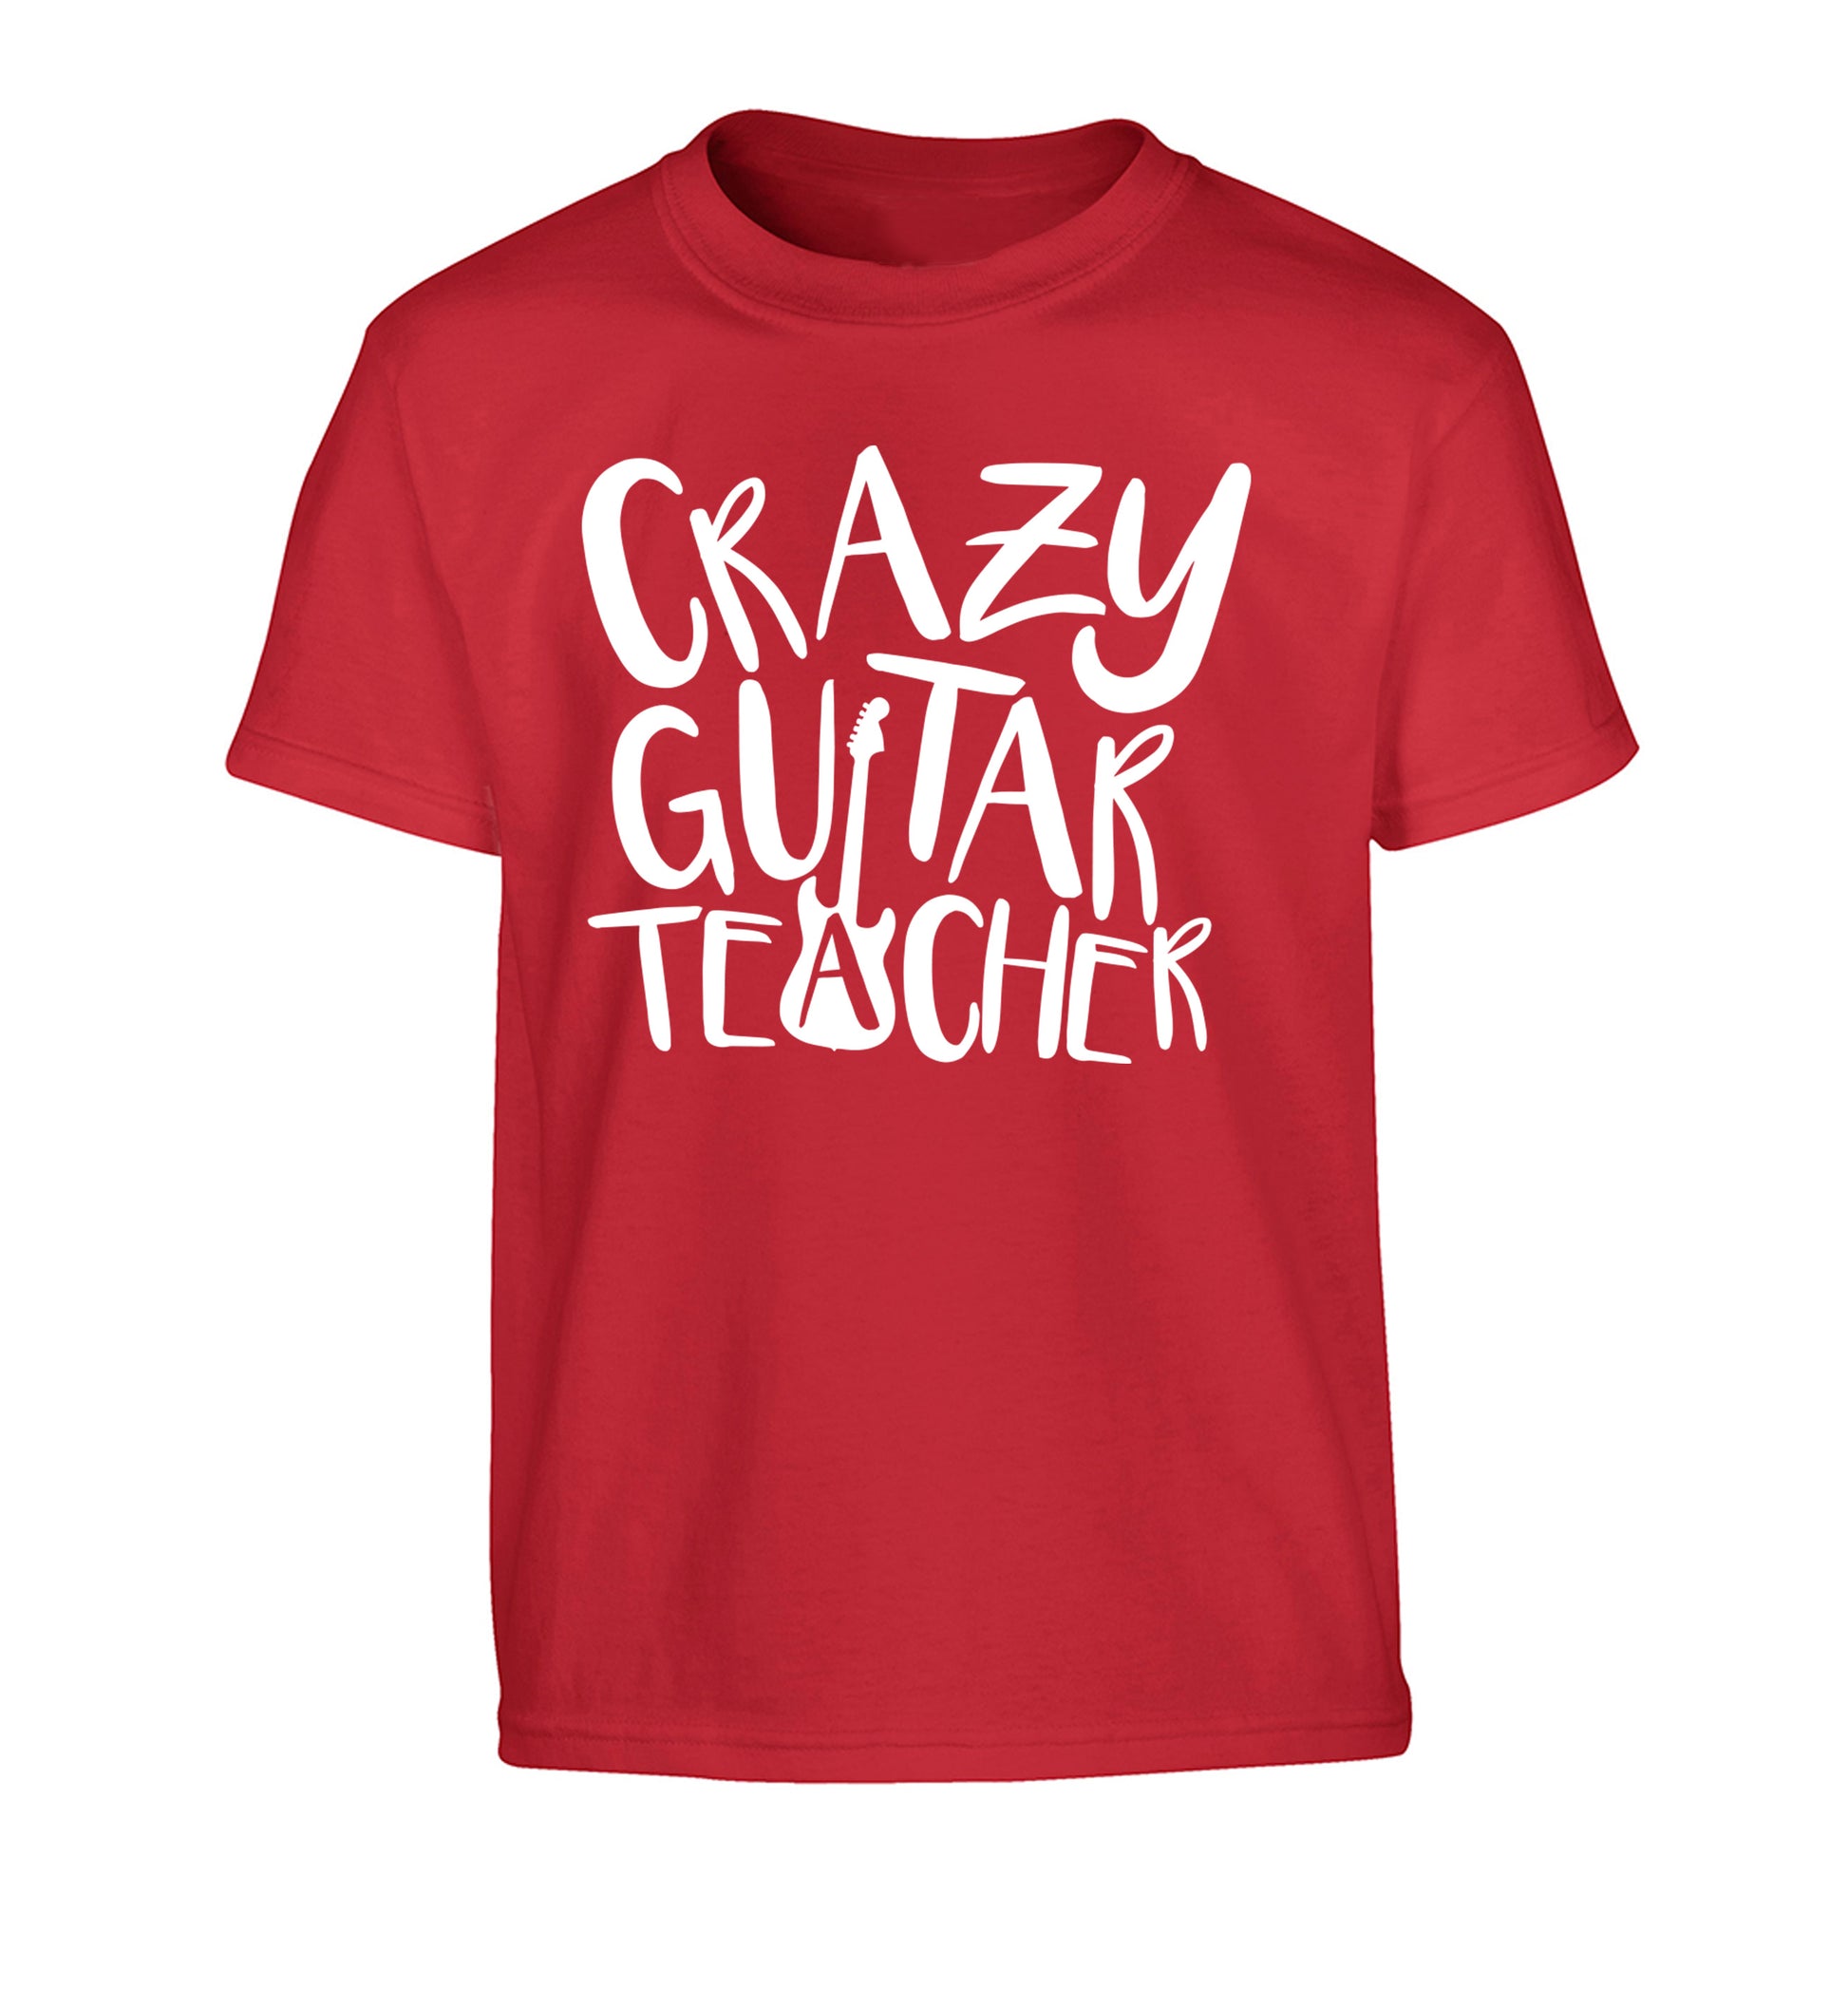 Crazy guitar teacher Children's red Tshirt 12-13 Years